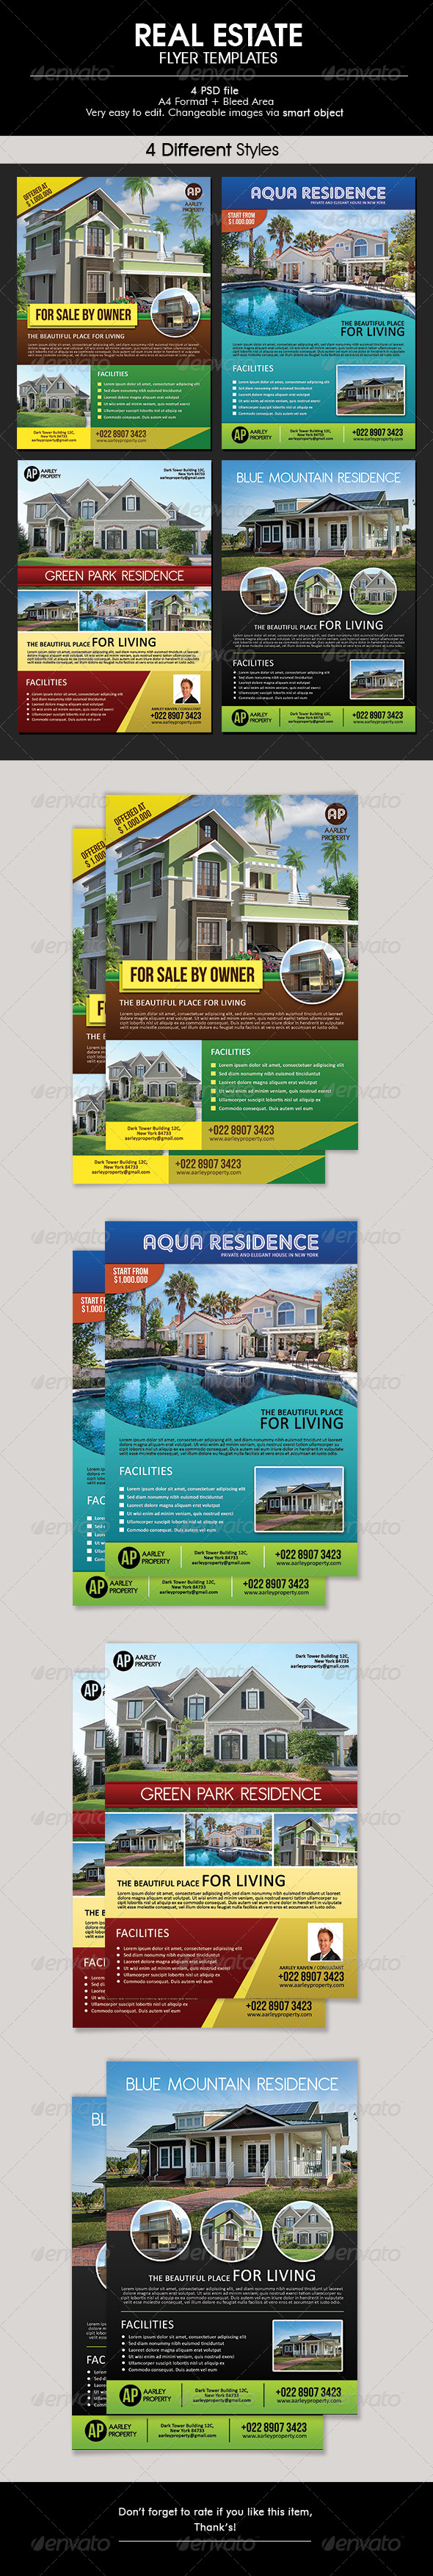 Real Estate Flyer